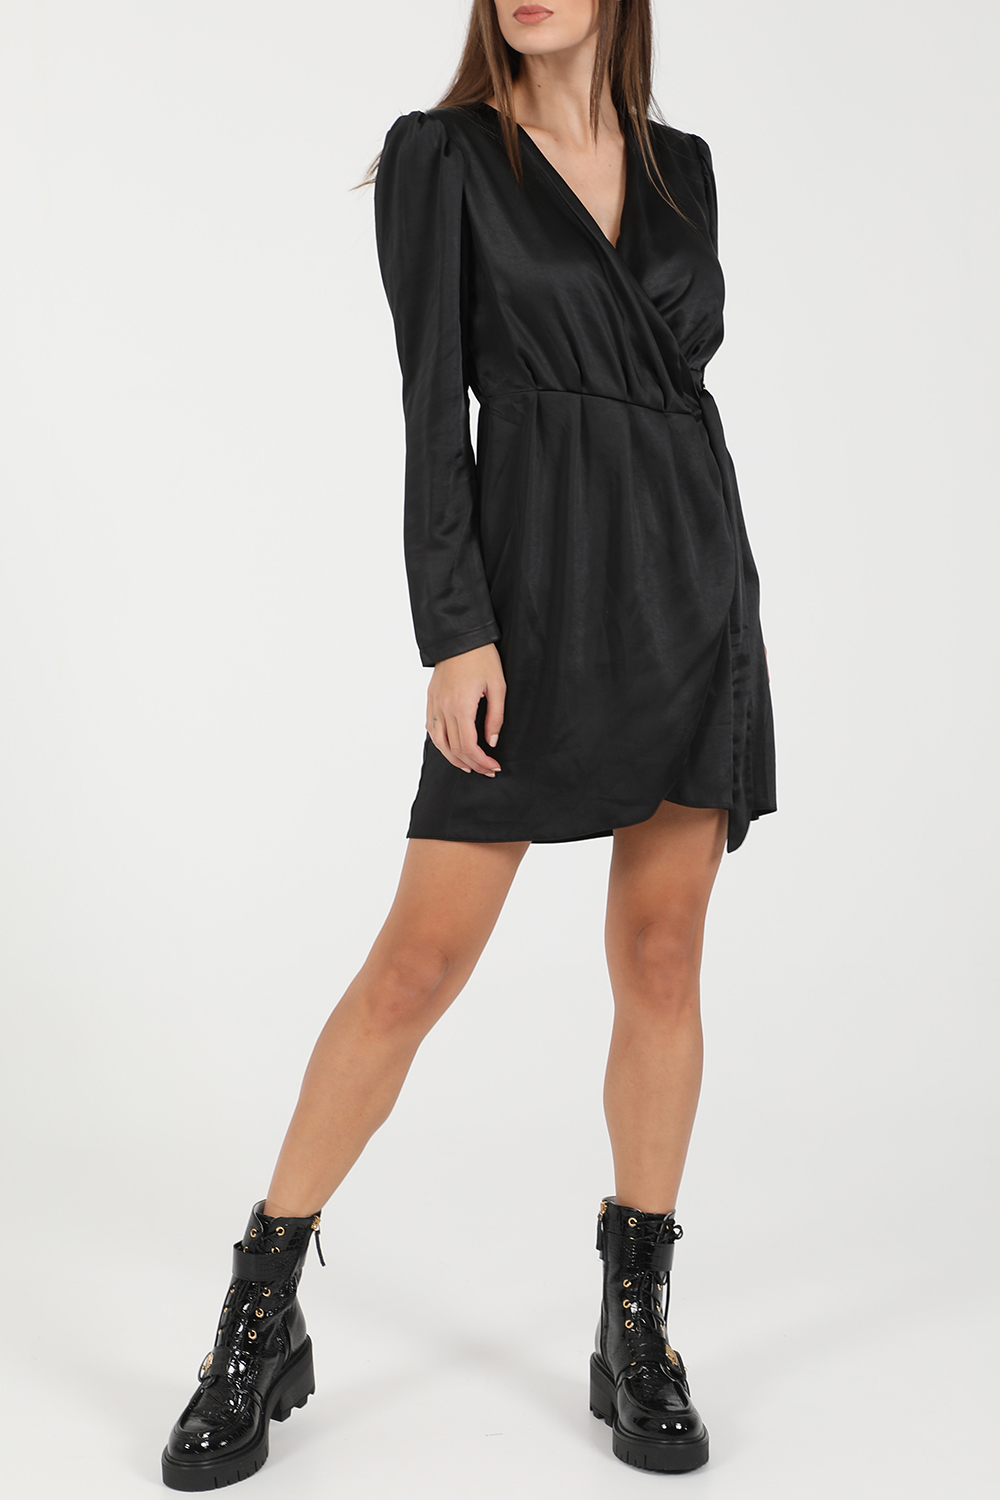 Γυναικεία/Ρούχα/Φόρεματα/Μίνι KENDALL + KYLIE - Γυναικείο μίνι φόρεμα KENDALL + KYLIE DRAPPED μαύρο